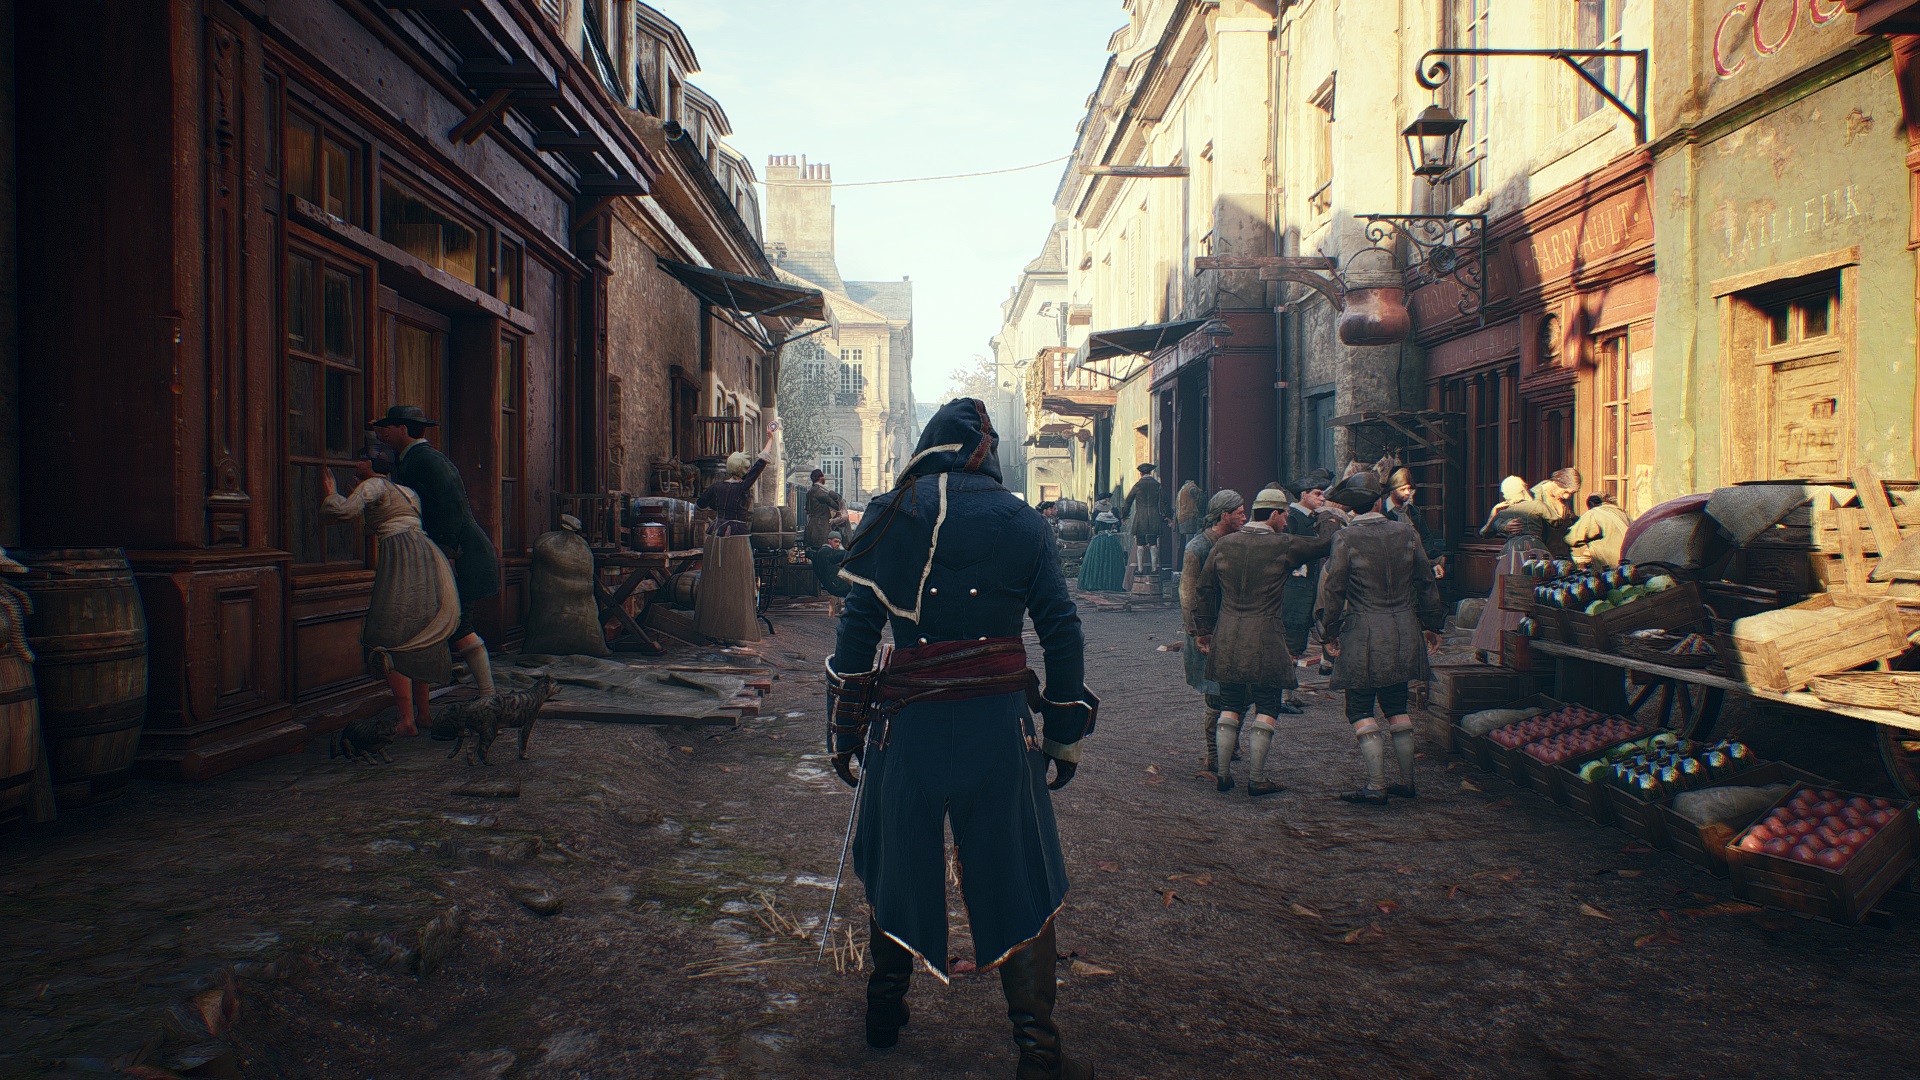 Ассасин юнит. Ассасин Крид Юнити. Assassin's Creed Unity screenshots. Assassins Creed Unity screenshot. Ассасин Крид Юнити улицы.